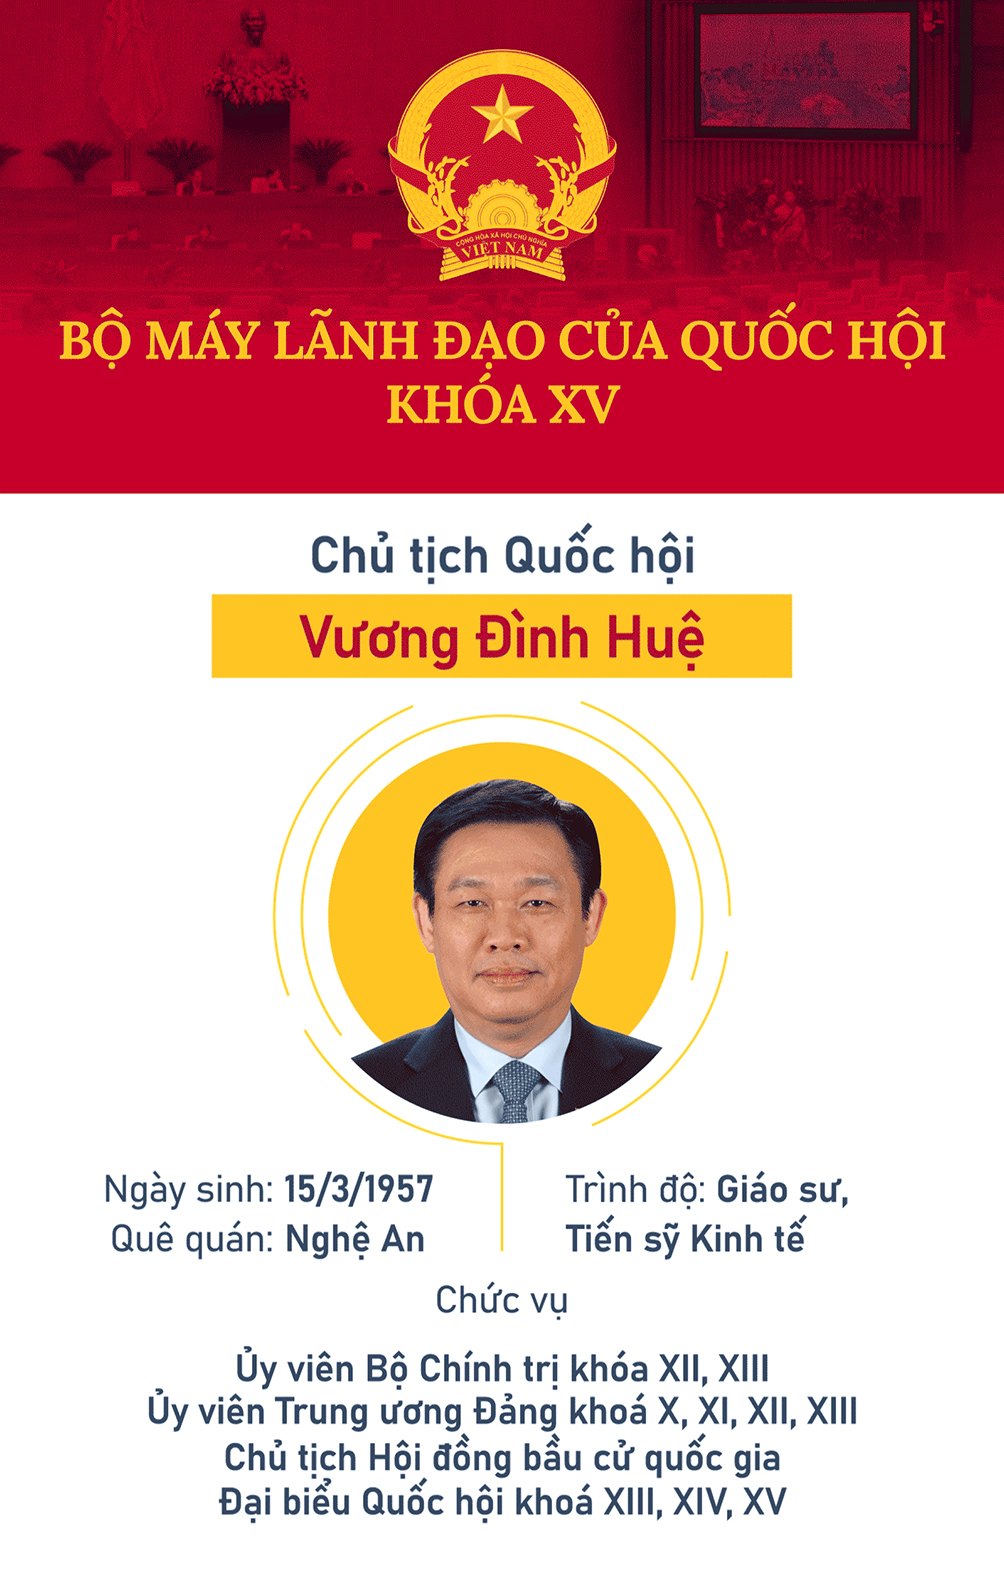 Chân dung các lãnh đạo của bộ máy Quốc hội Việt Nam khóa XV - 1